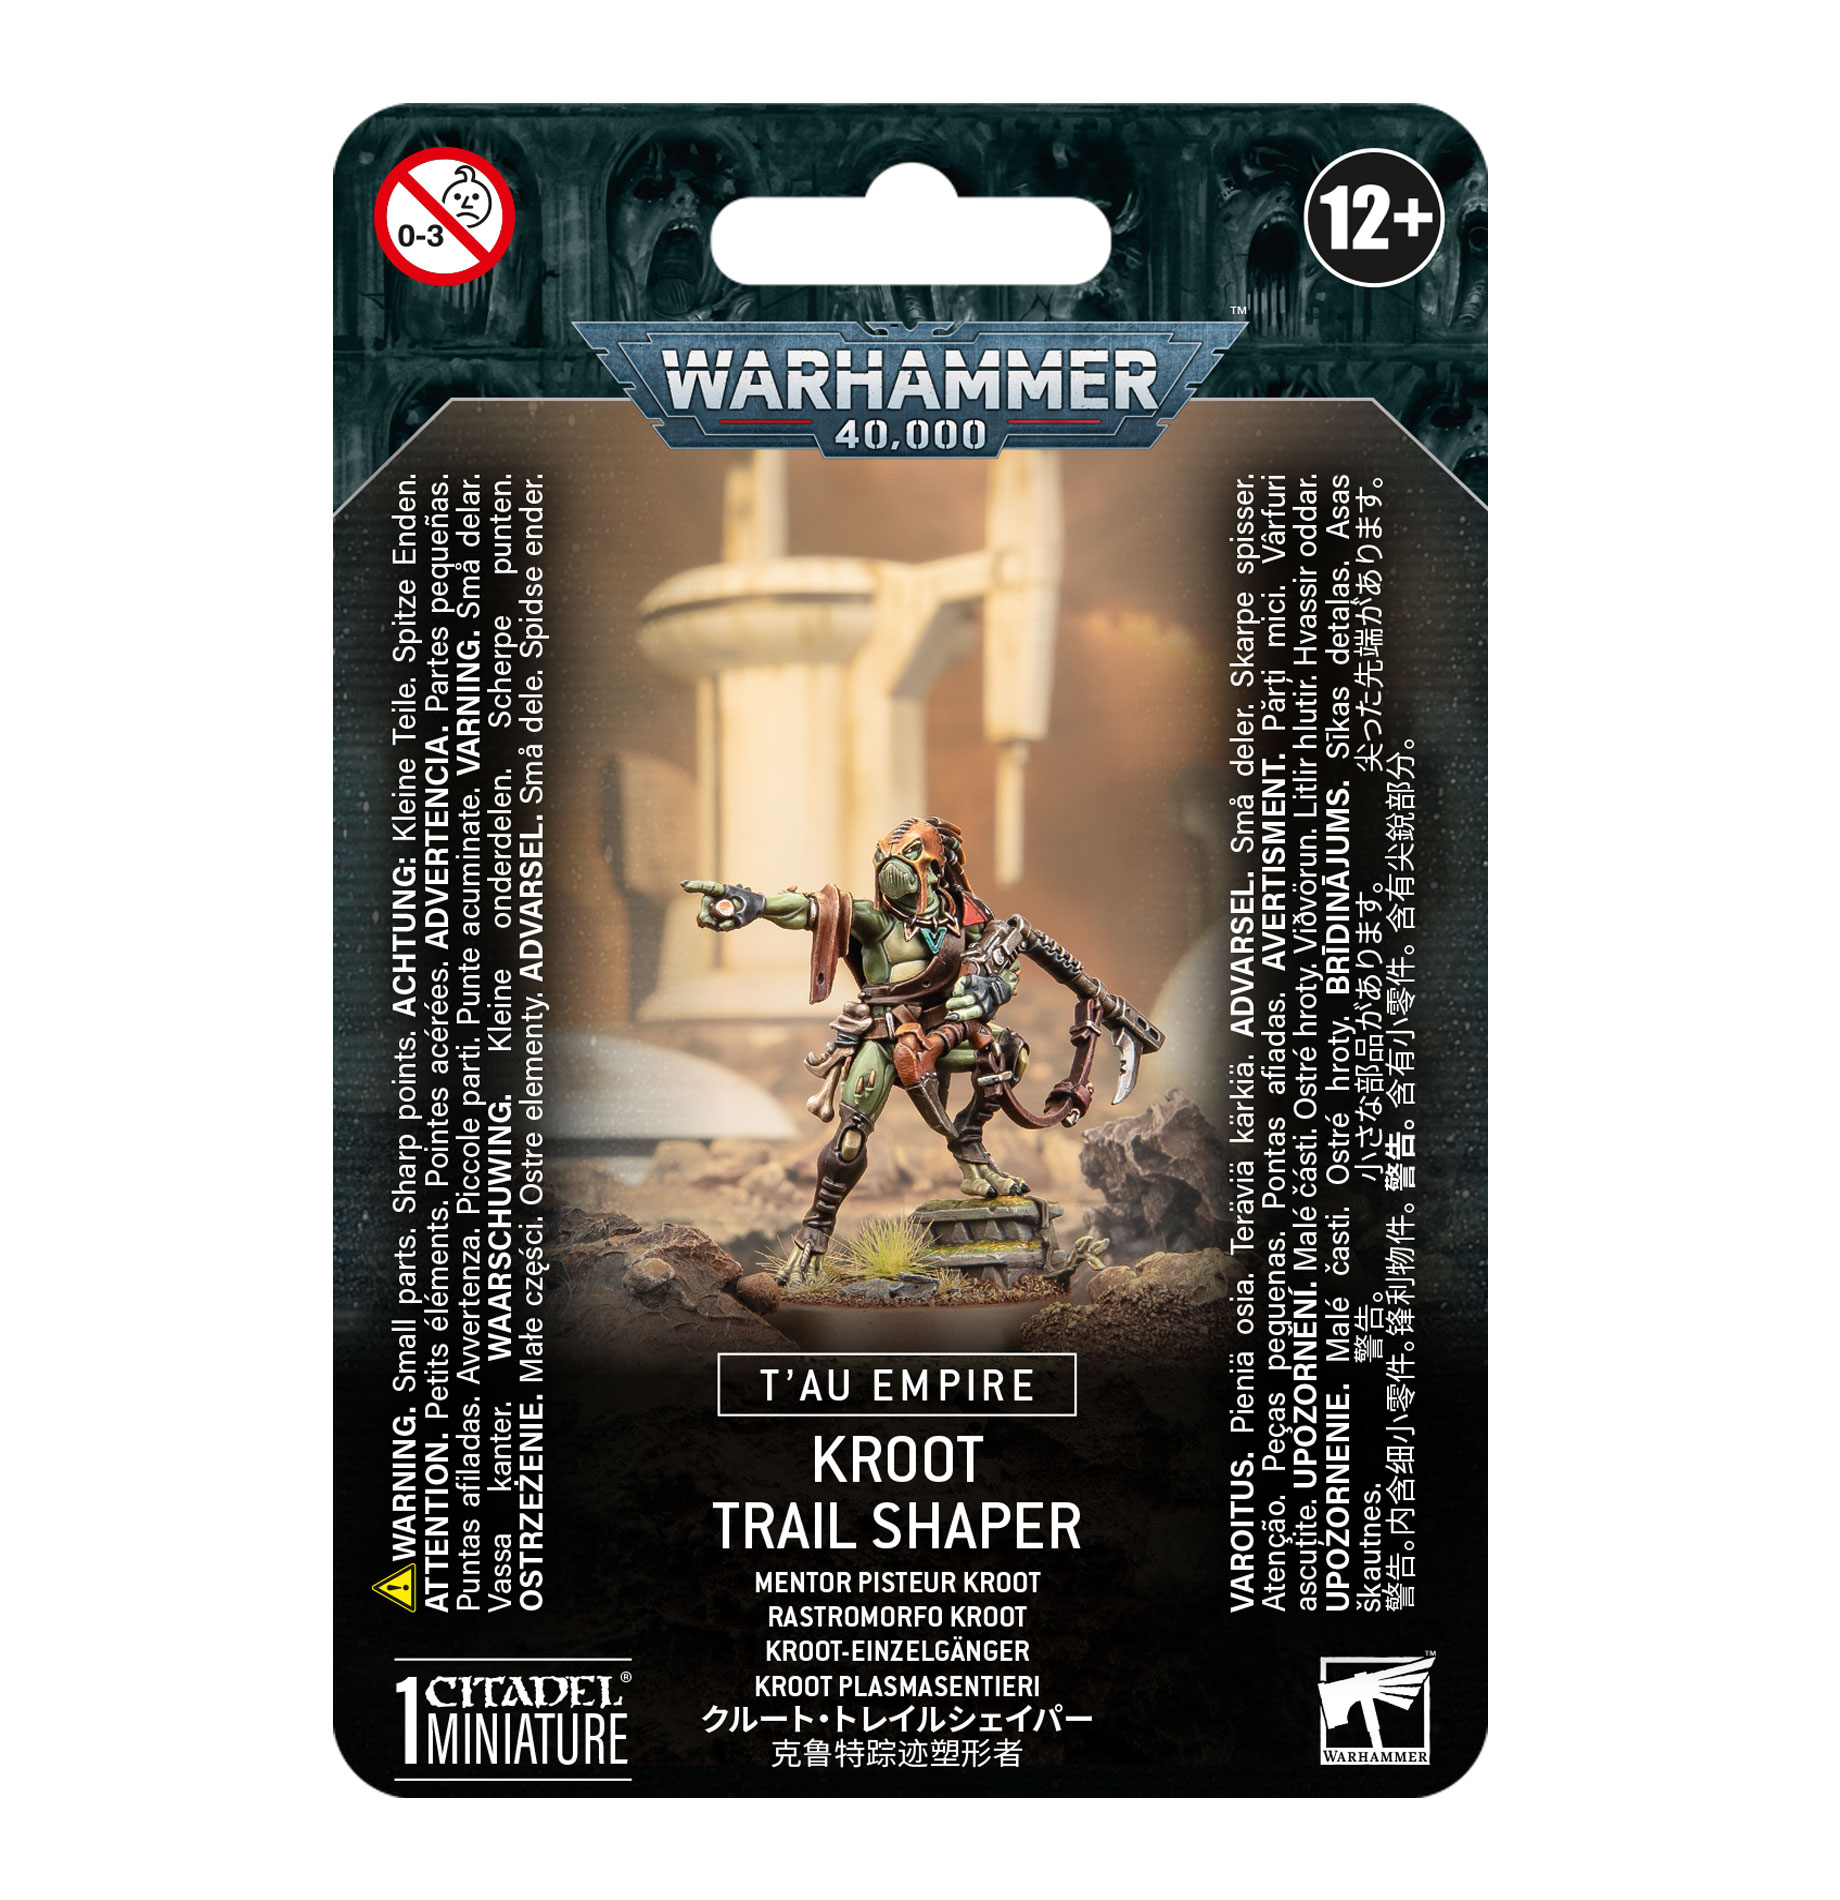 Warhammer 40,000: Tau Empire: Kroot Trail Shaper 